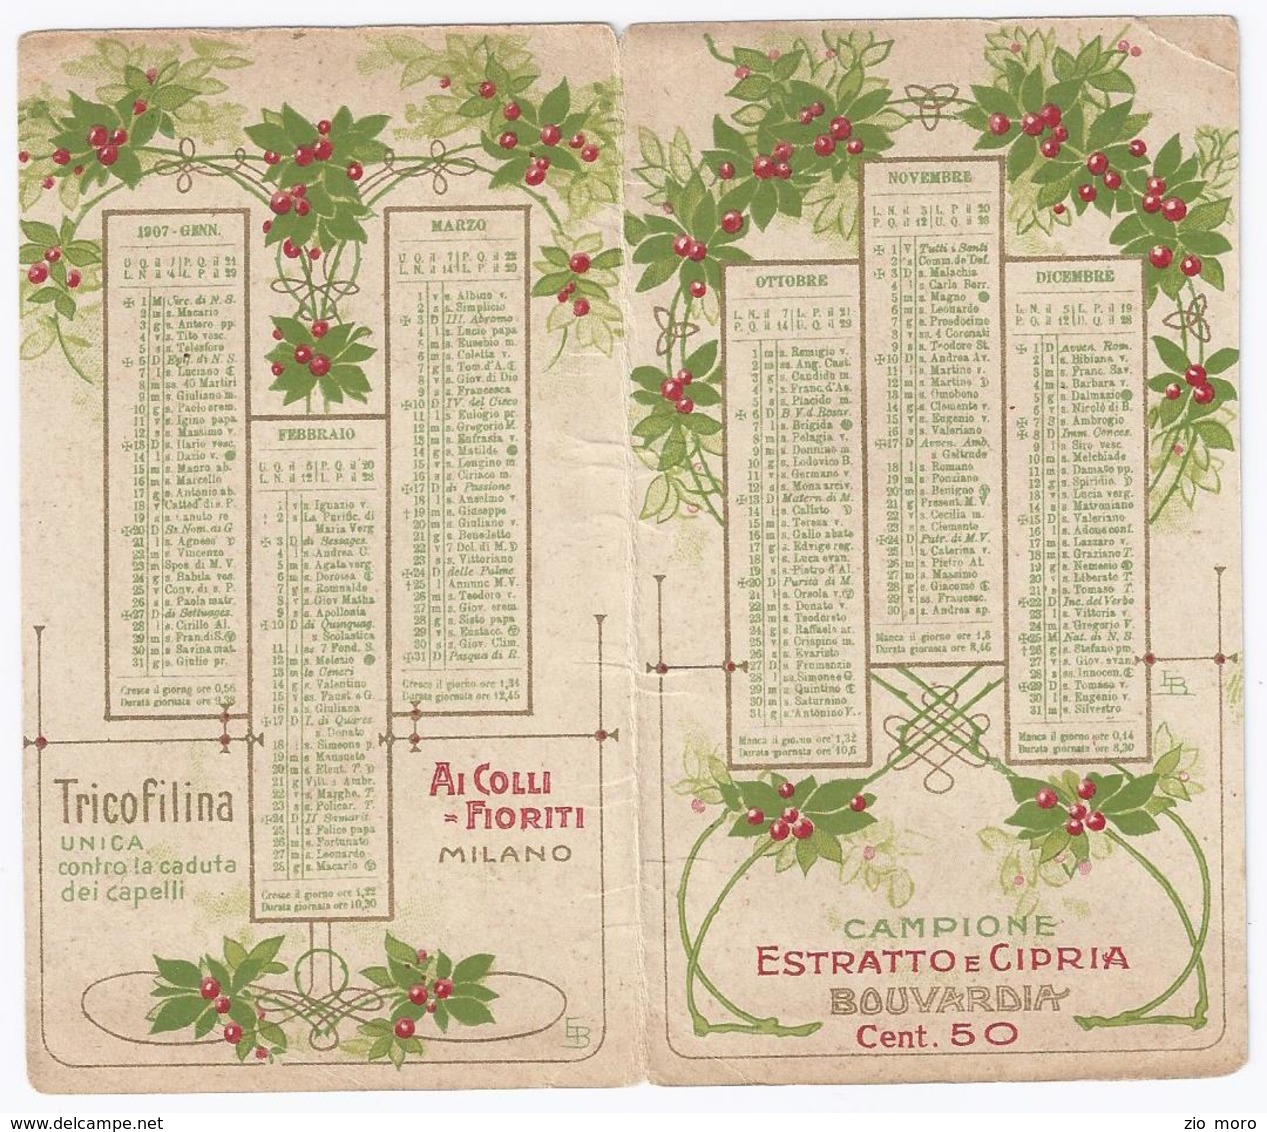 Splendido Calendario Da Tasca Liberty 1907 Ai Colli Fioriti - Milano - Estratto E Cipria BOUVARDIA - Petit Format : 1901-20